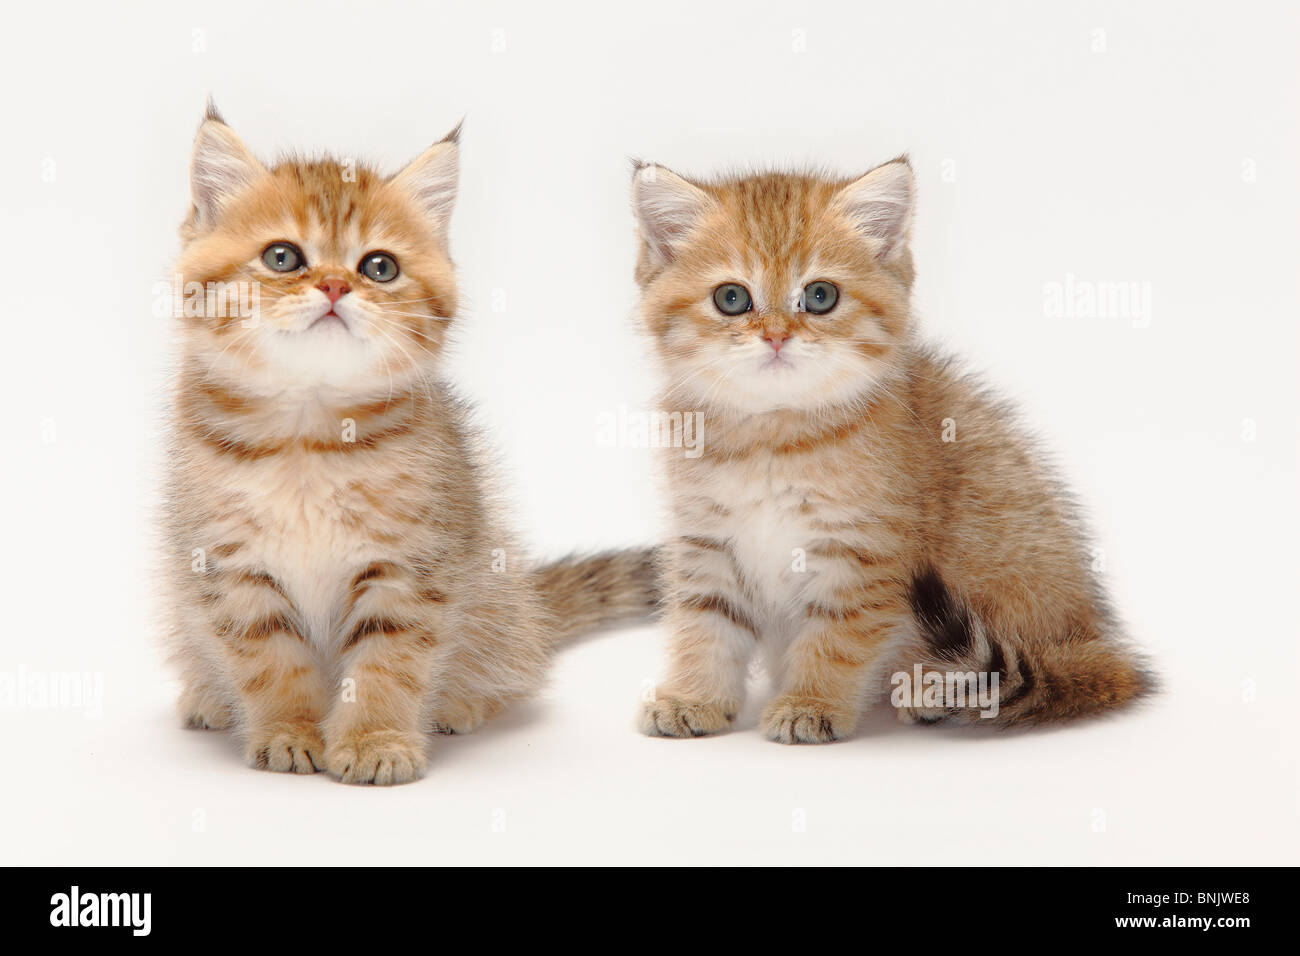 golden british longhair kittens for sale